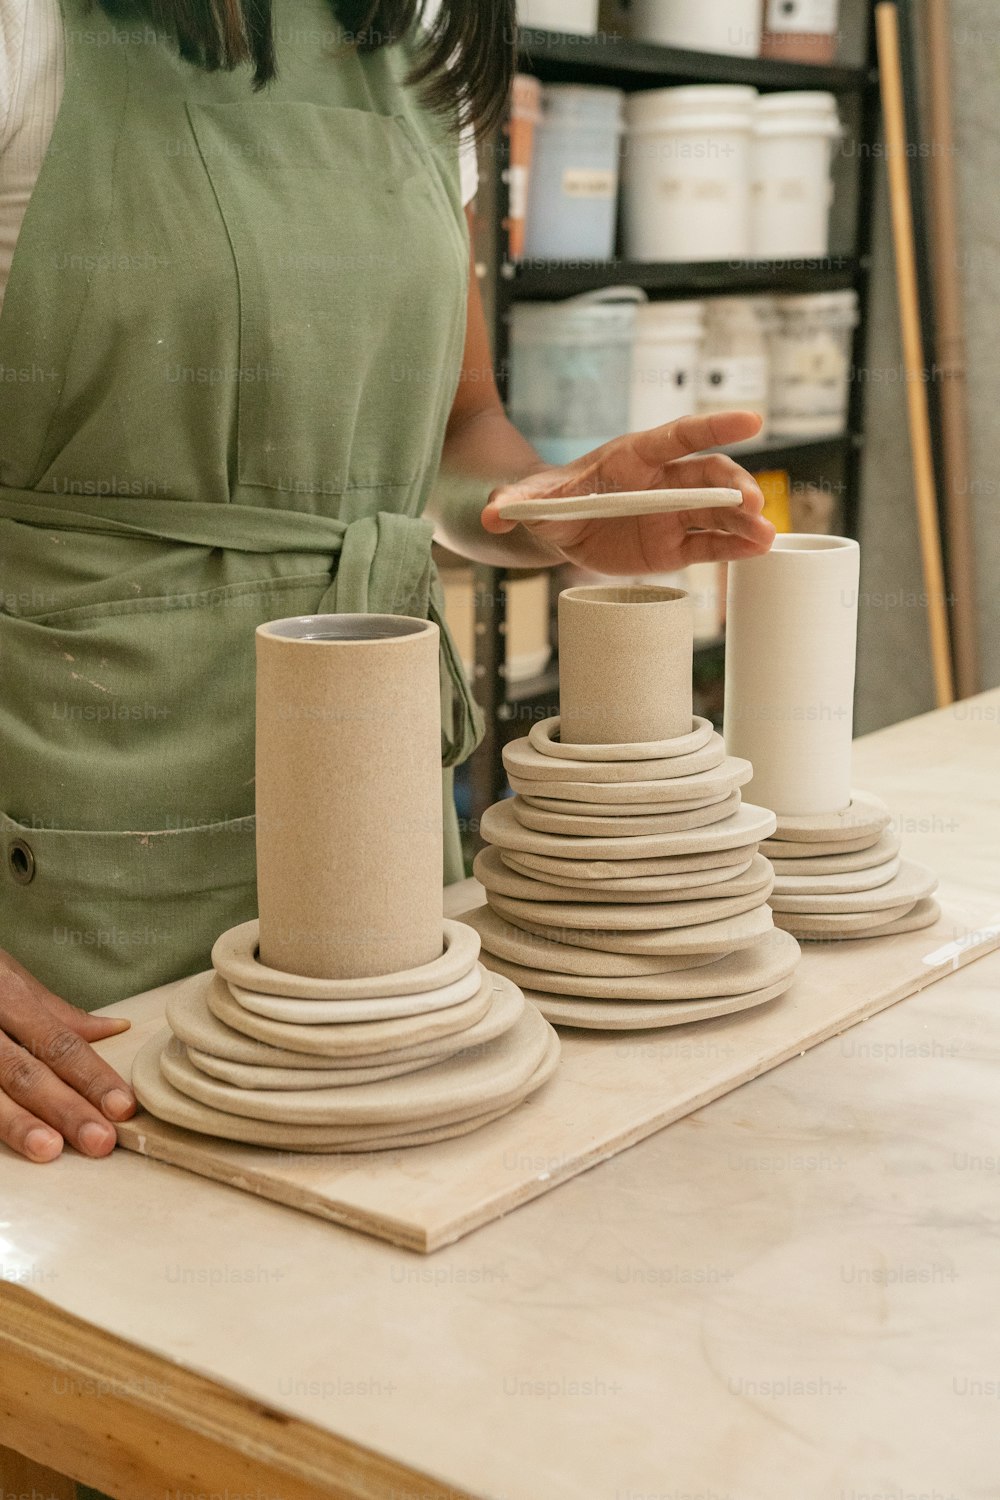 Une femme en robe verte fabrique des vases